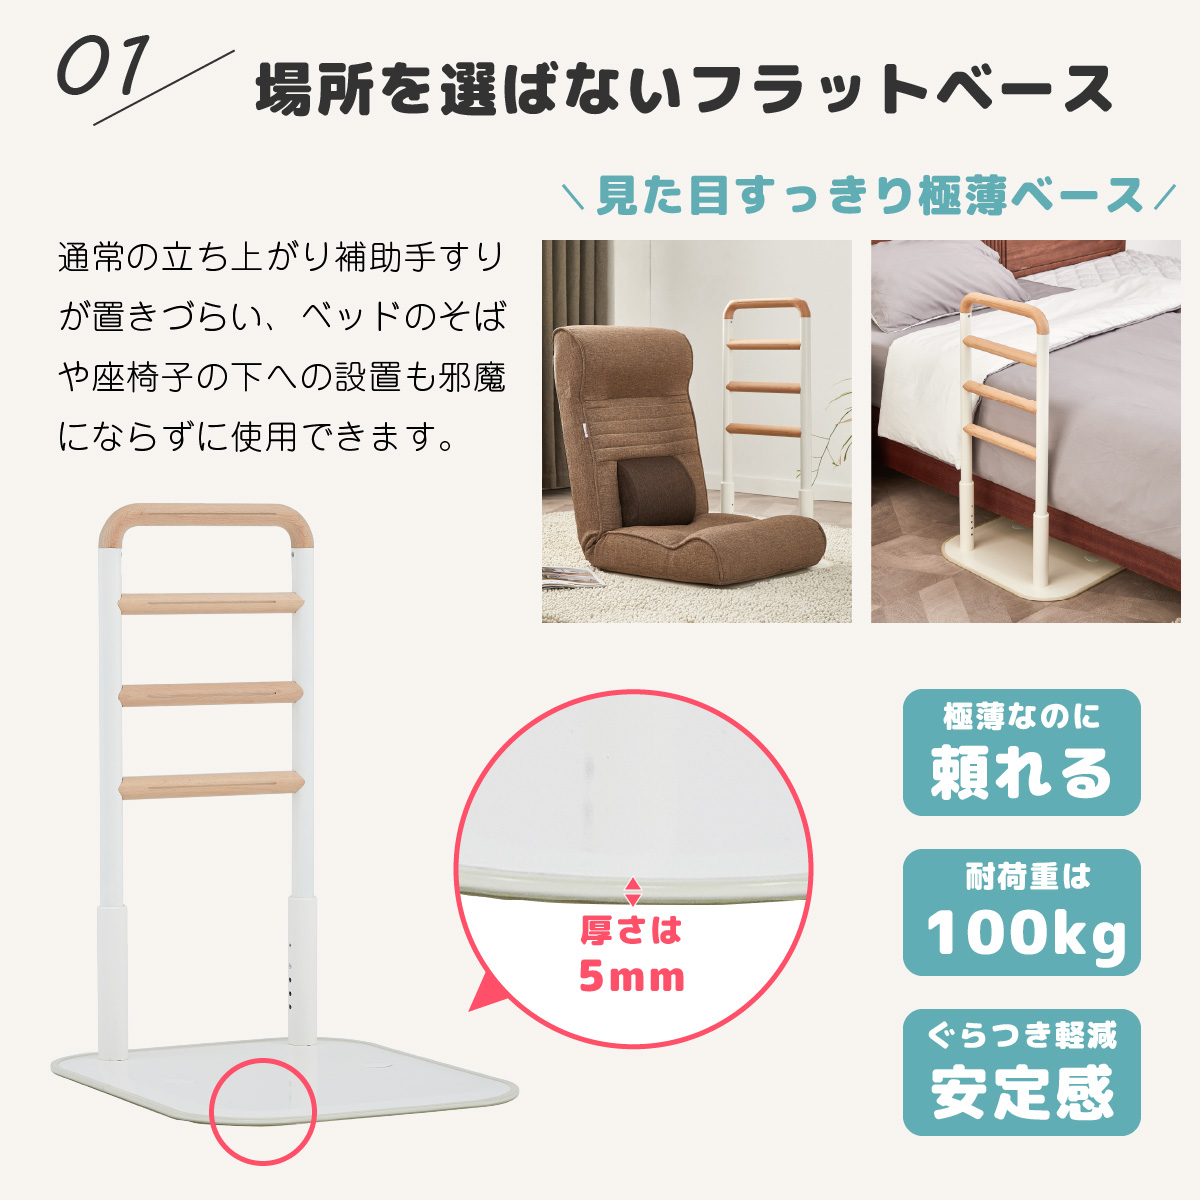 楽々健 床置き式手すり 4段 【簡単組み立て】寝室 リビング フラット